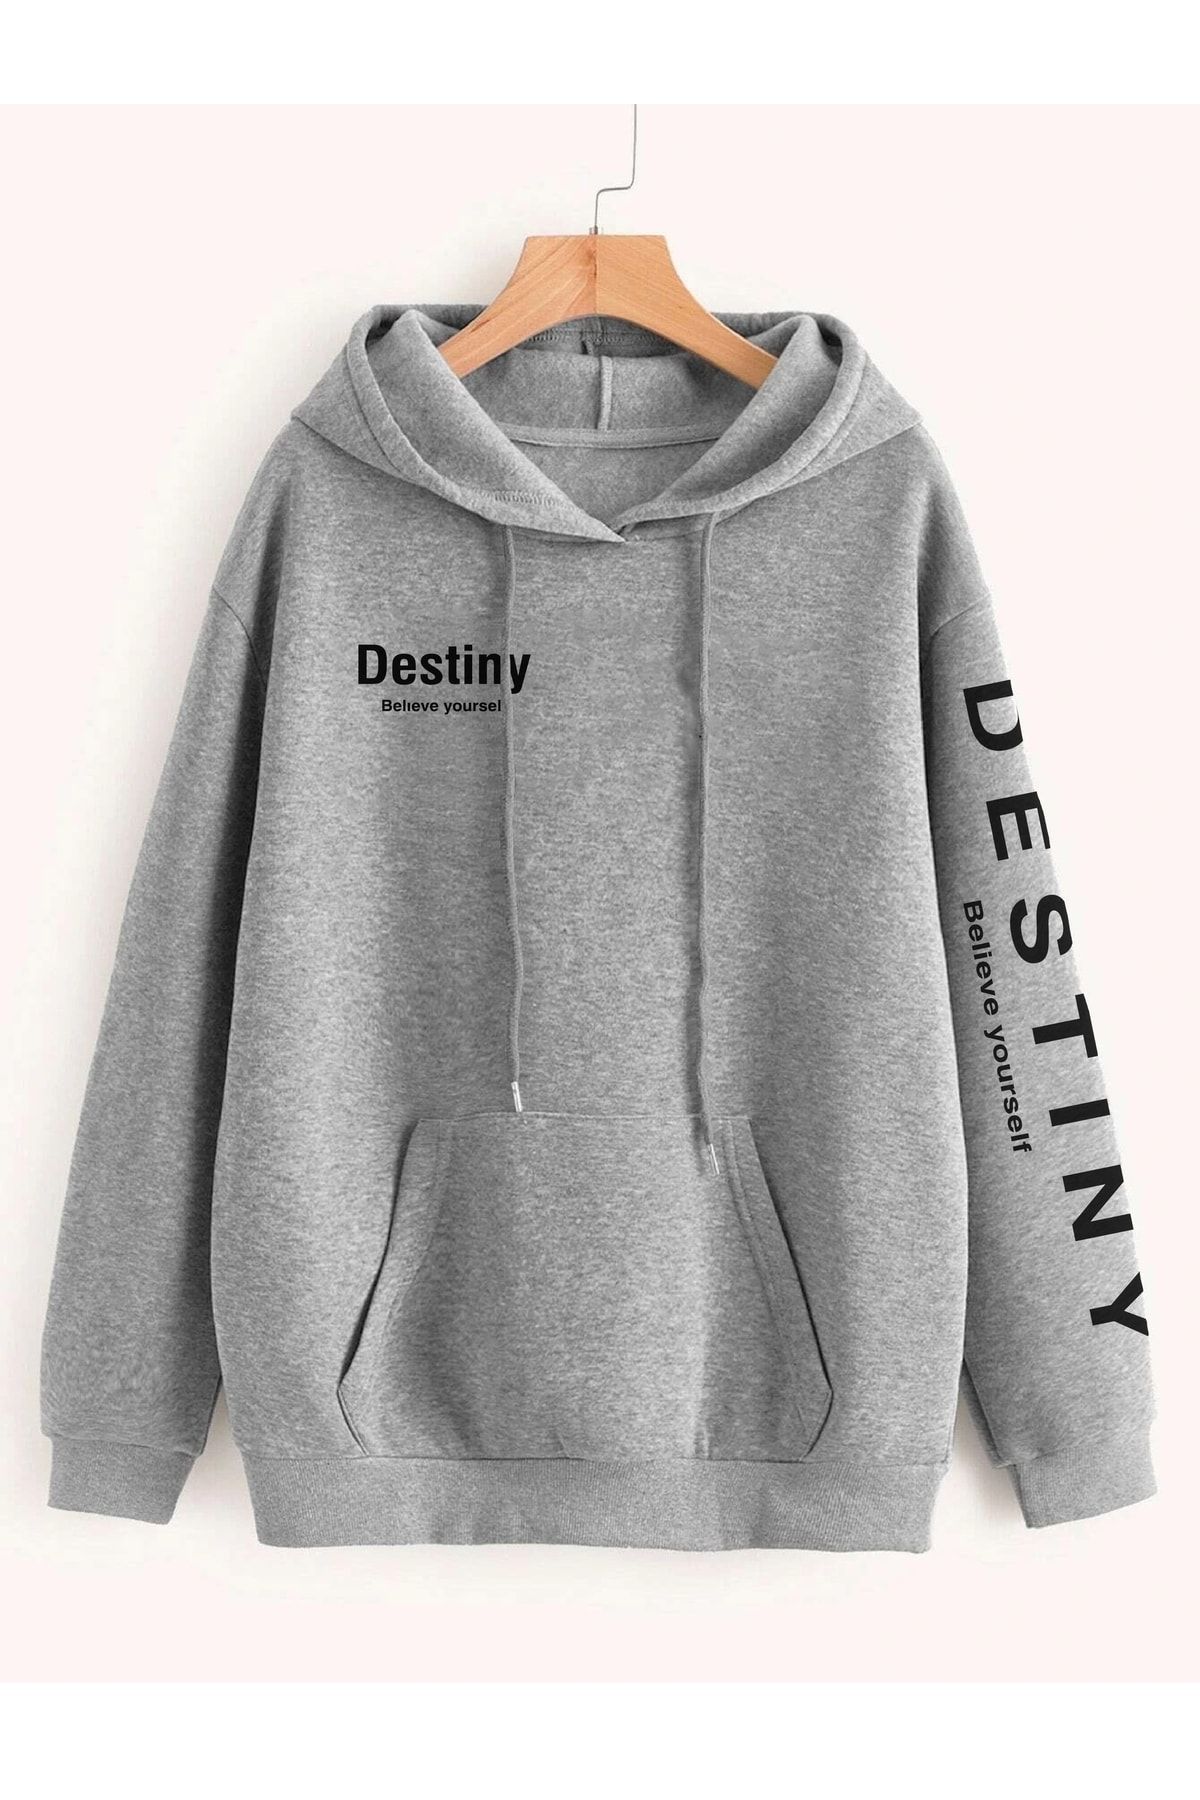 Deocept Unisex Destiny Baskılı Oversize Kapüşonlu Sweatshirt